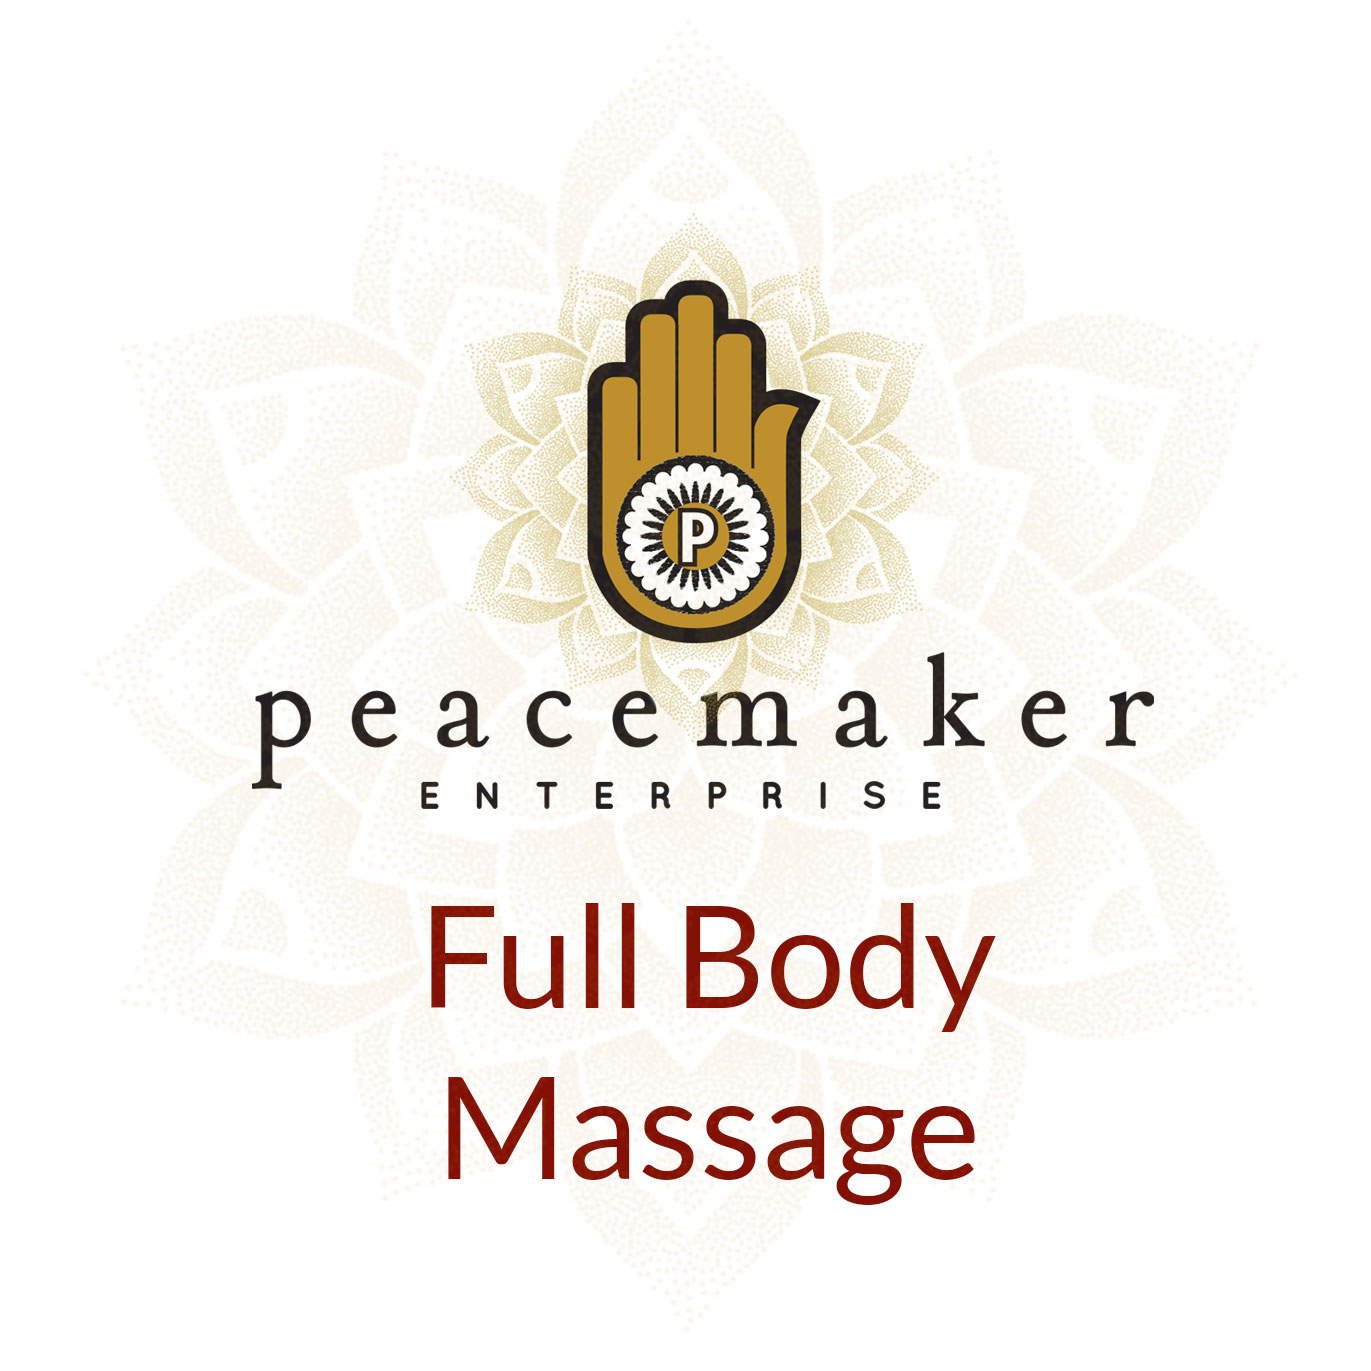 Full Body Massage Peacemaker Enterprise